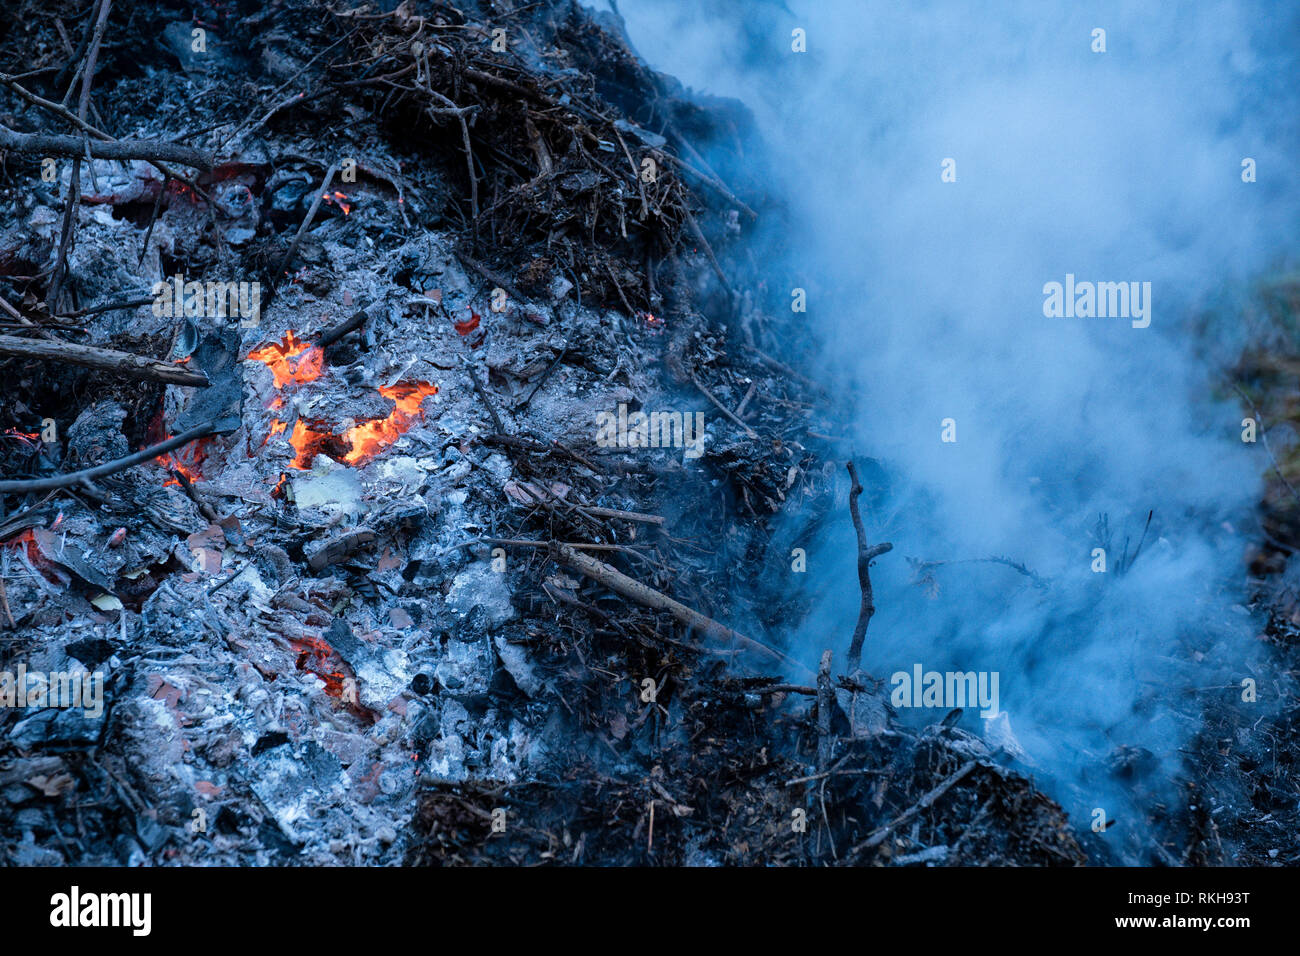 Glut und Rauch von einer sterbenden Bonfire. Stockfoto